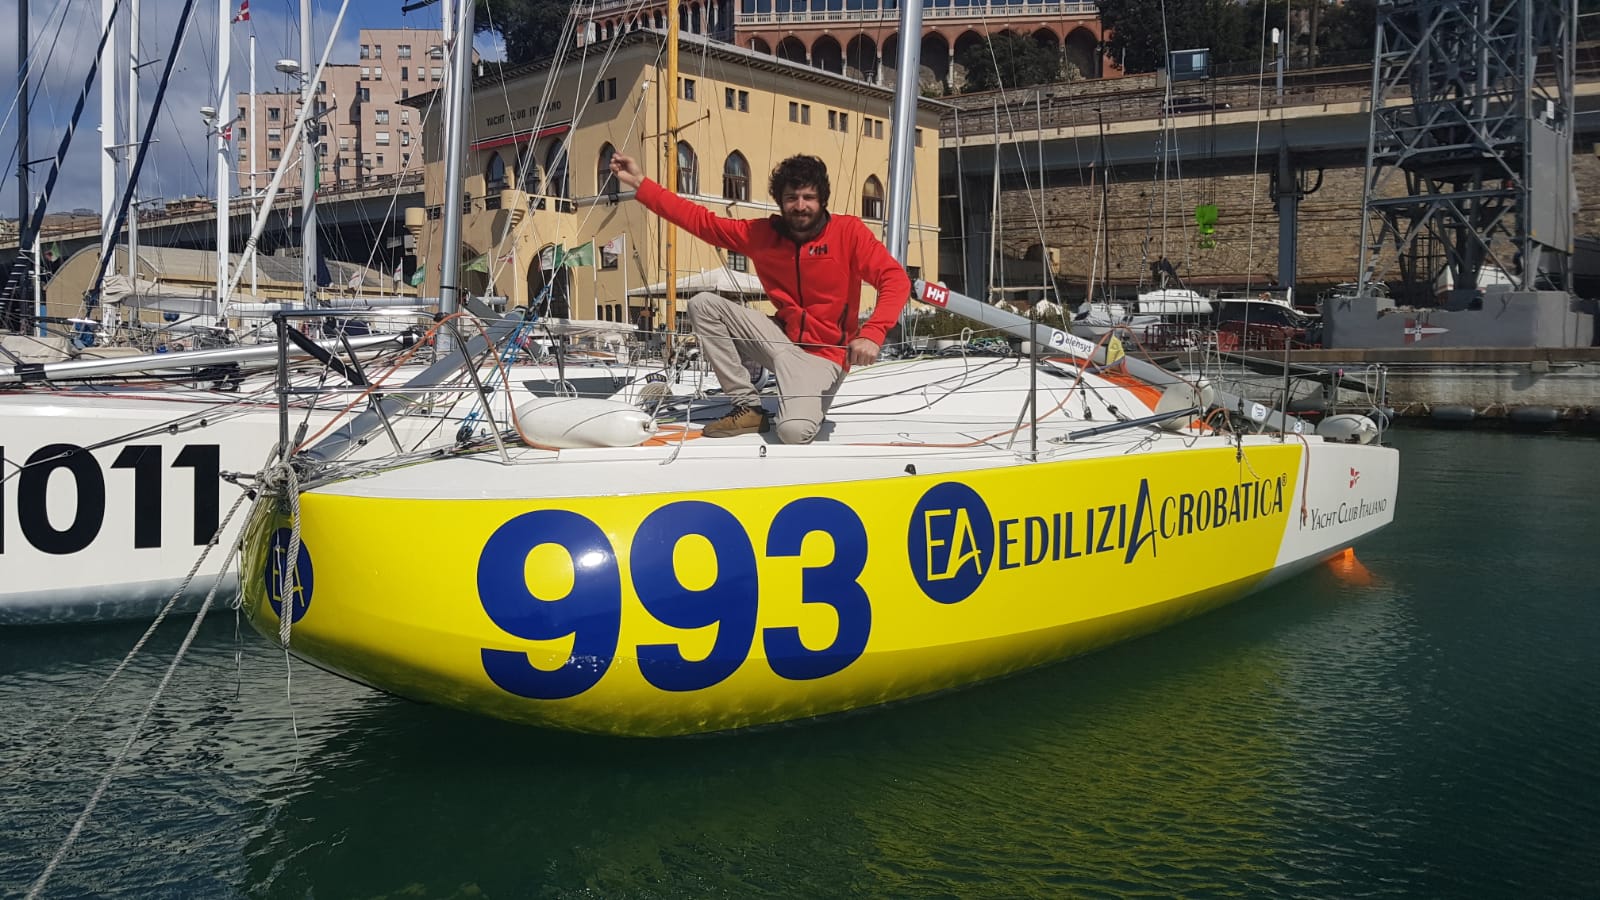 EdiliziAcrobatica Sponsor per Alberto Riva, giovane promessa della vela.